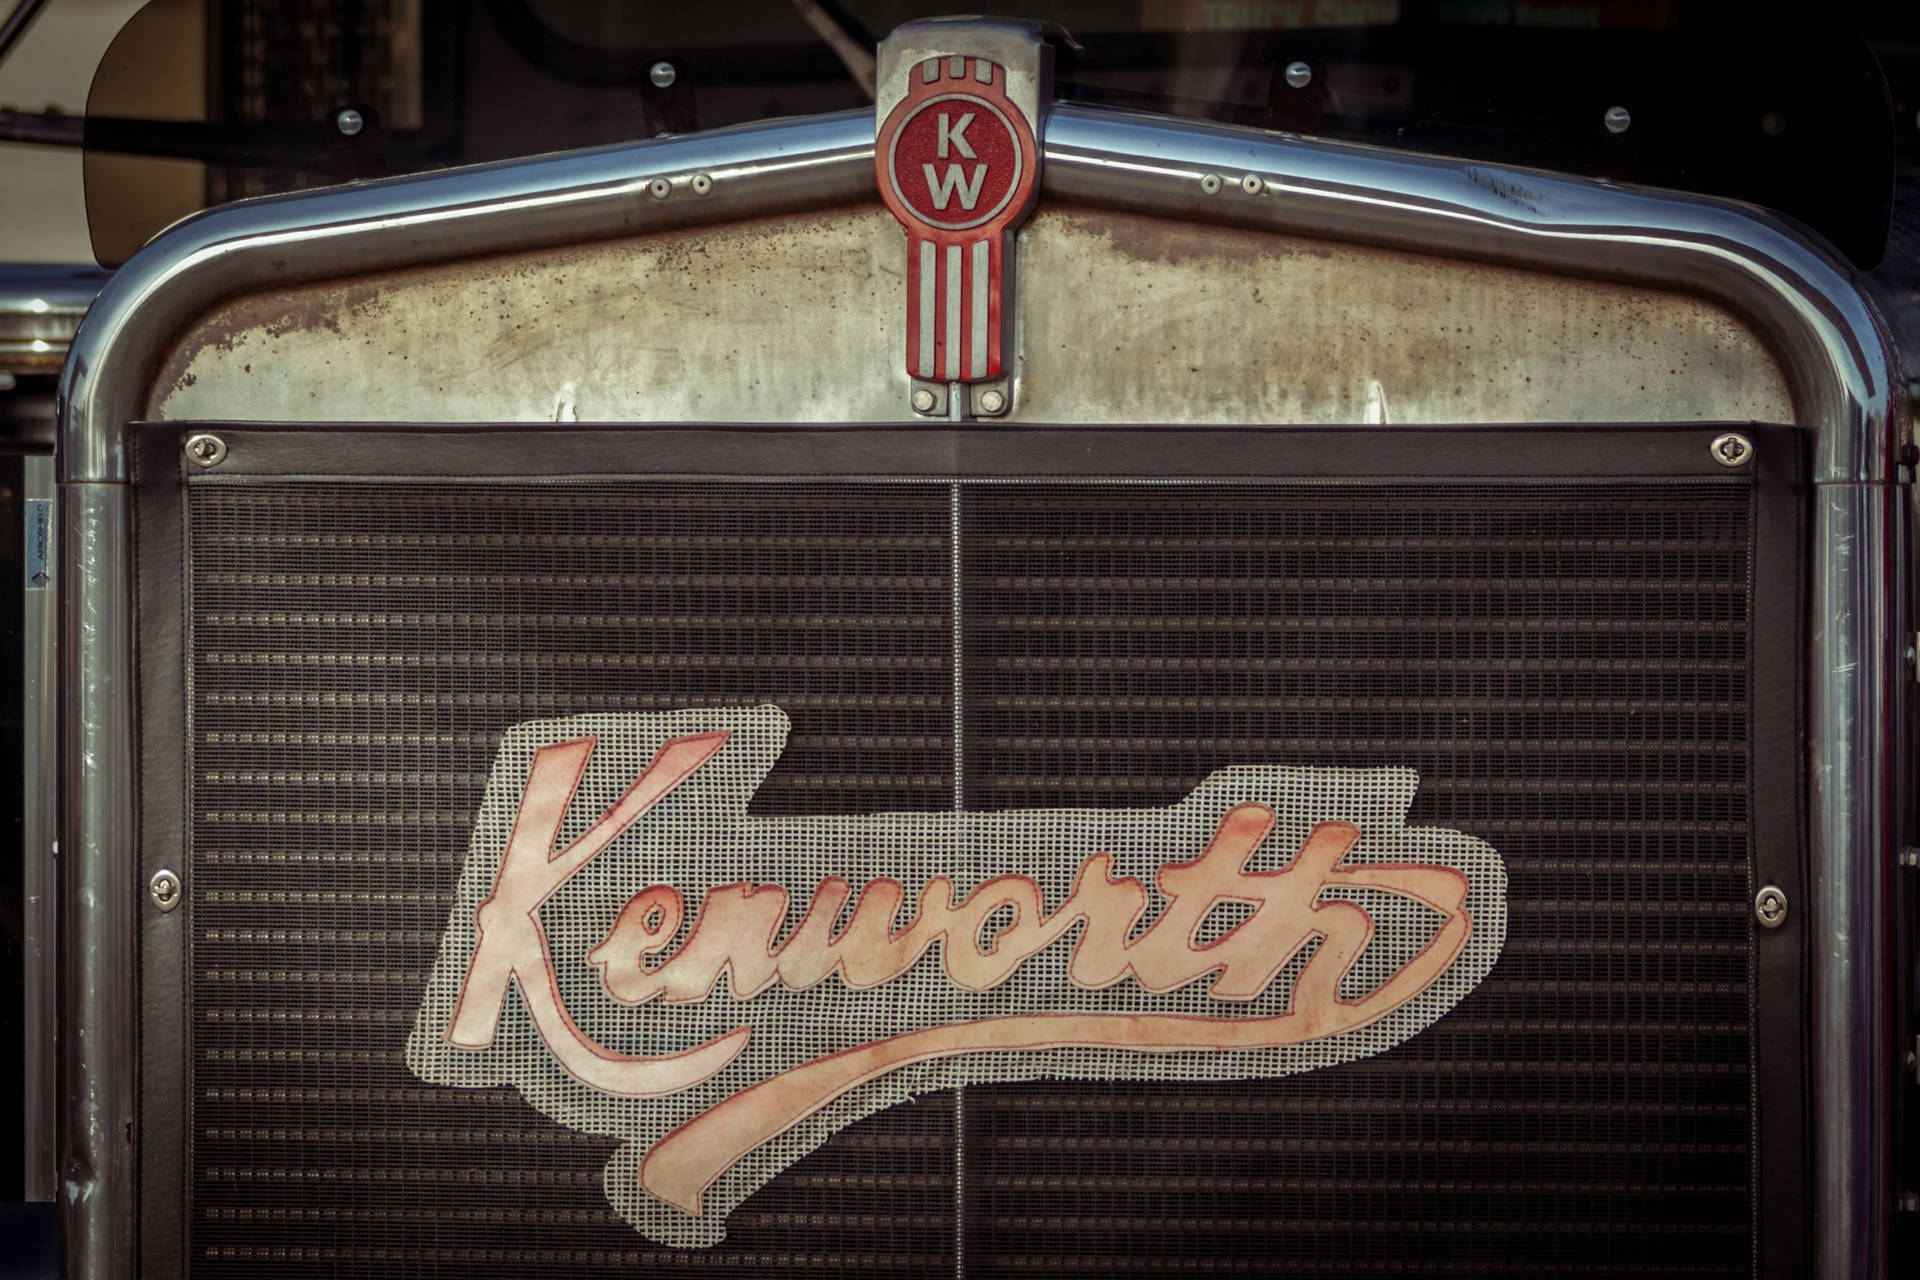 Tìm hiểu thêm về lịch sử của Kenworth thông qua hình nền Vintage Logo độc đáo này. Tinh tế và đầy tinh thần kỷ niệm, bức ảnh đặc biệt này sẽ khiến bạn thấy hào hứng về thương hiệu xe tải này hơn bao giờ hết.